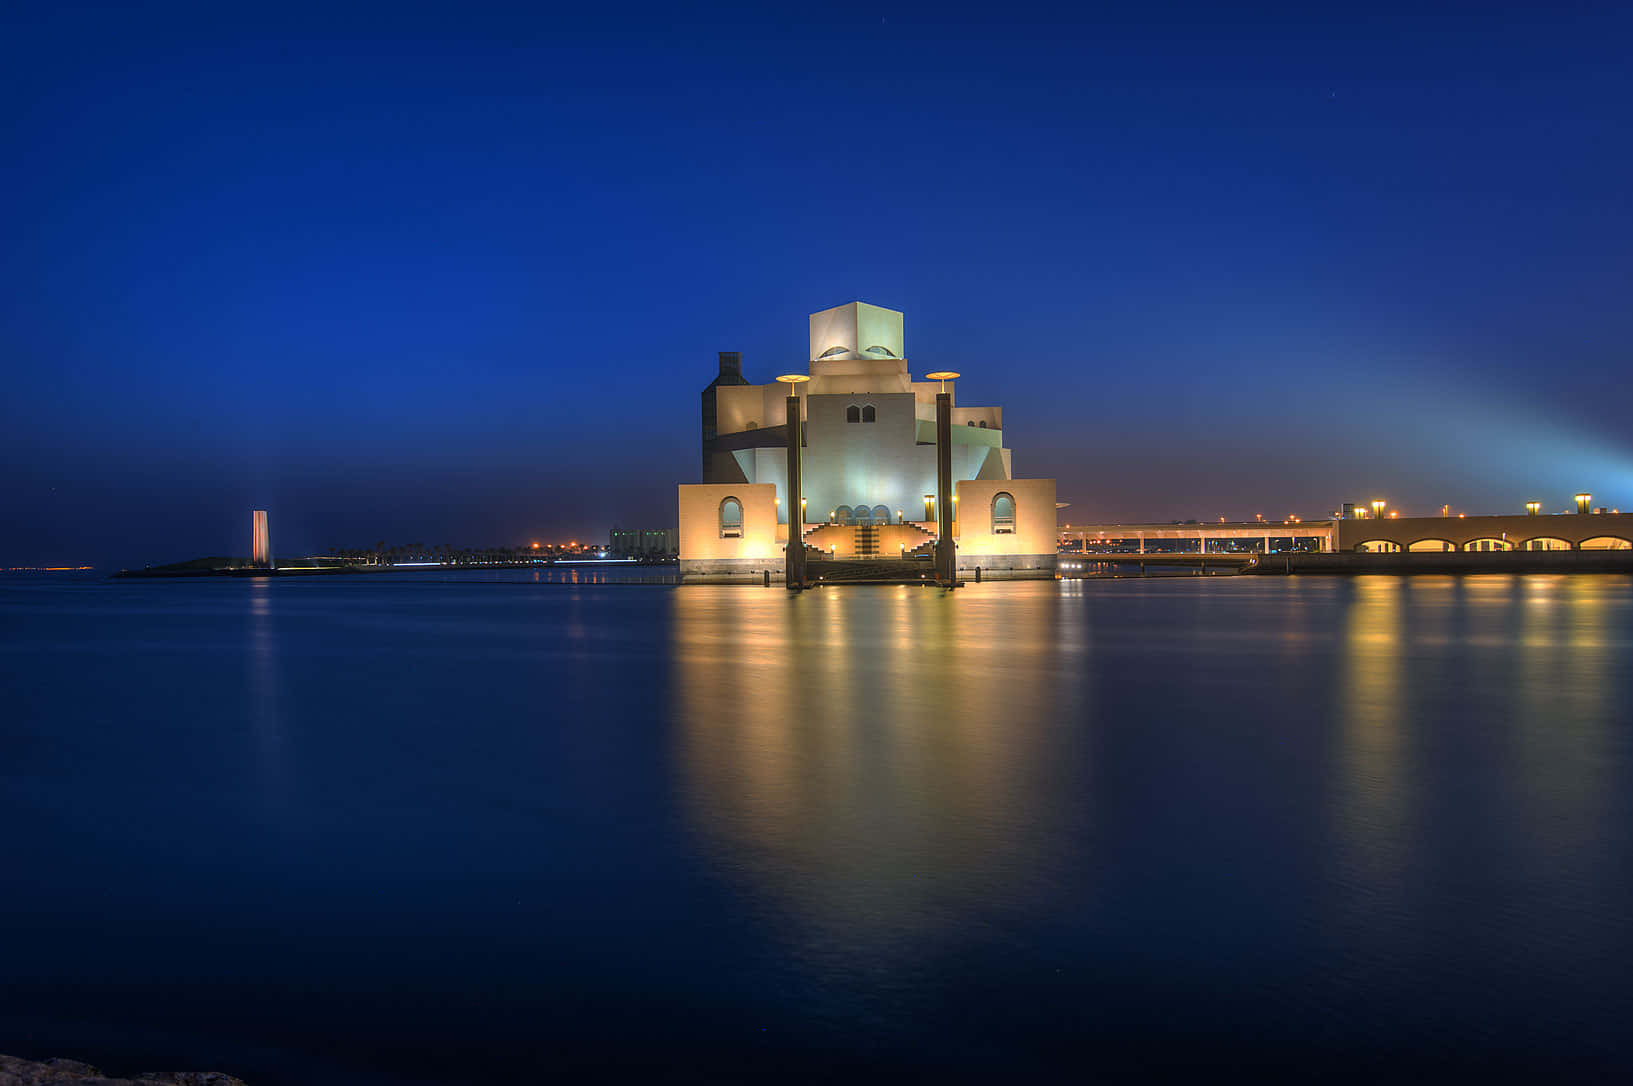 Museumdes Islamischen Kunstwerks Im Abendlicht Des Ozeans Reflektiert Wallpaper